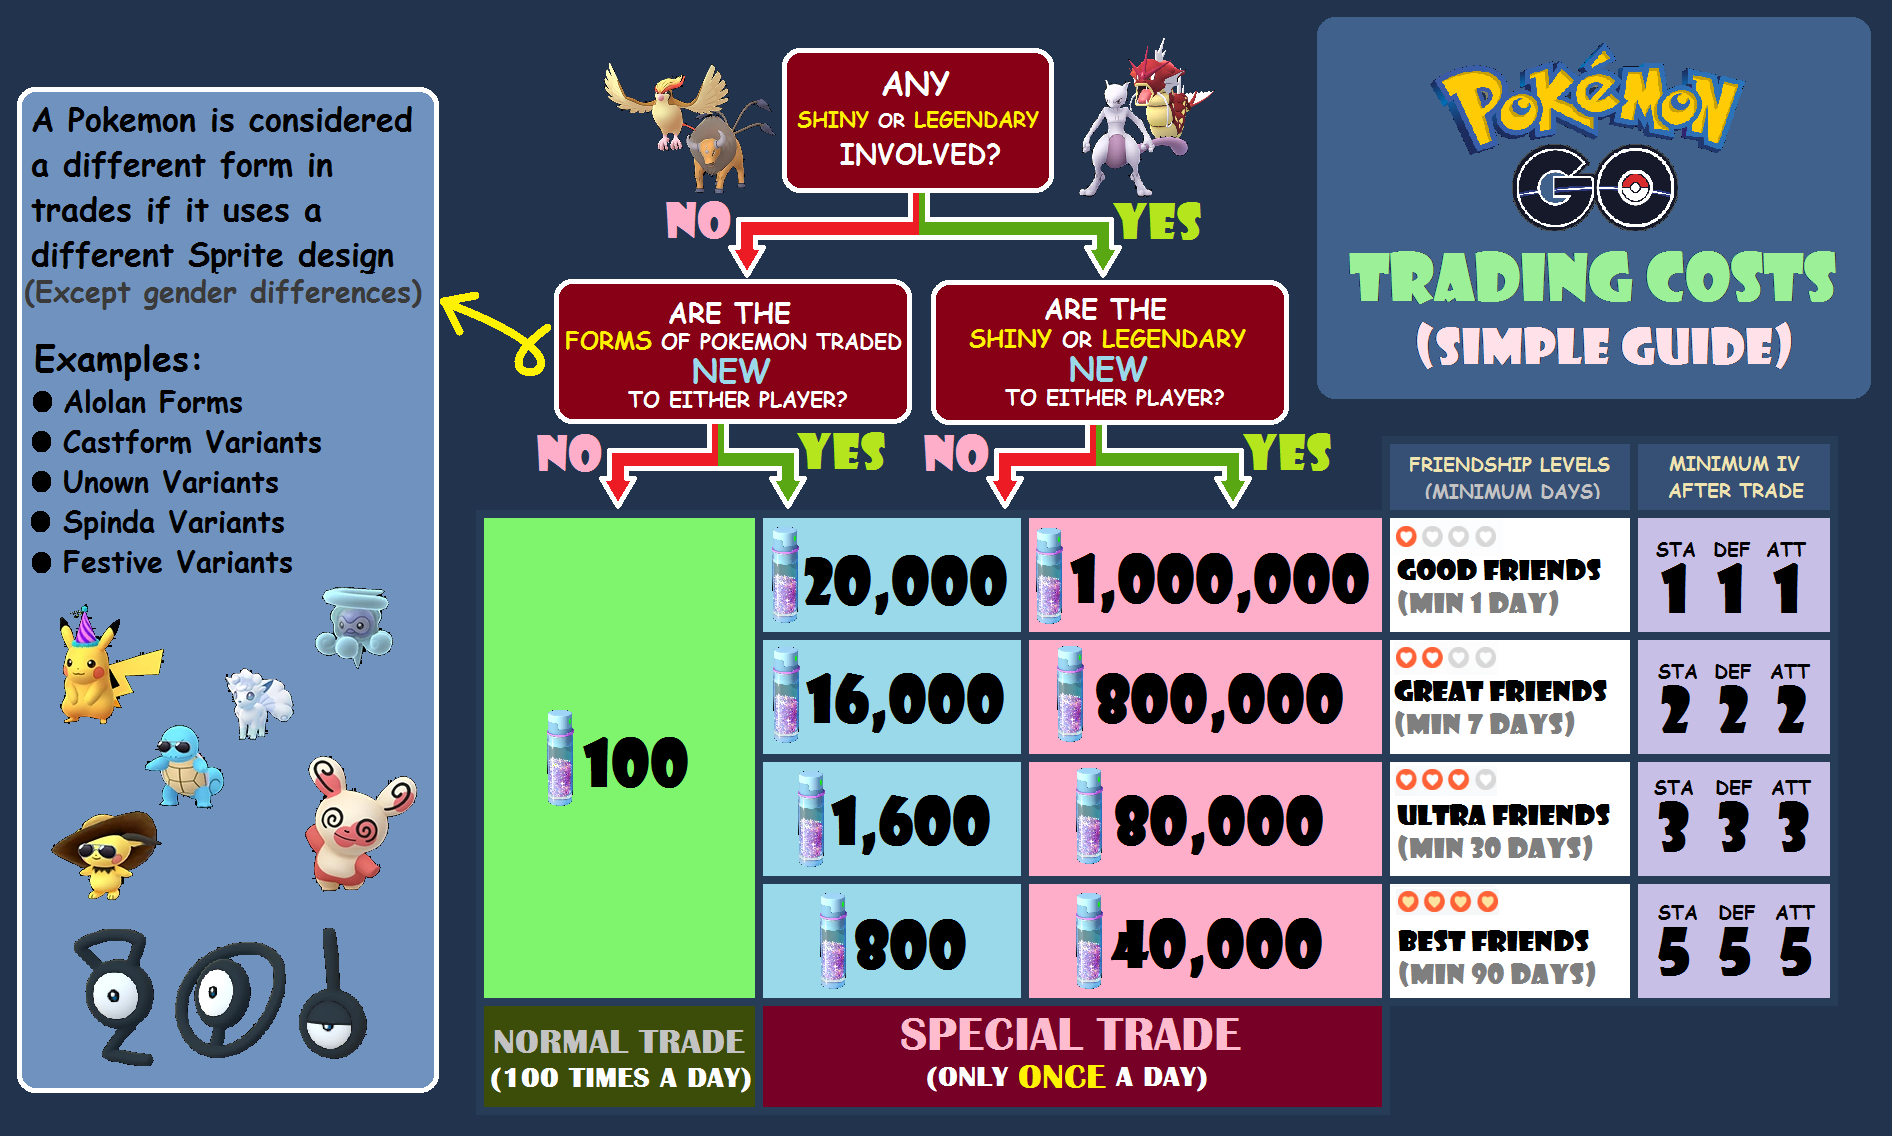 Pokémon go 星塵交易費用簡單指南